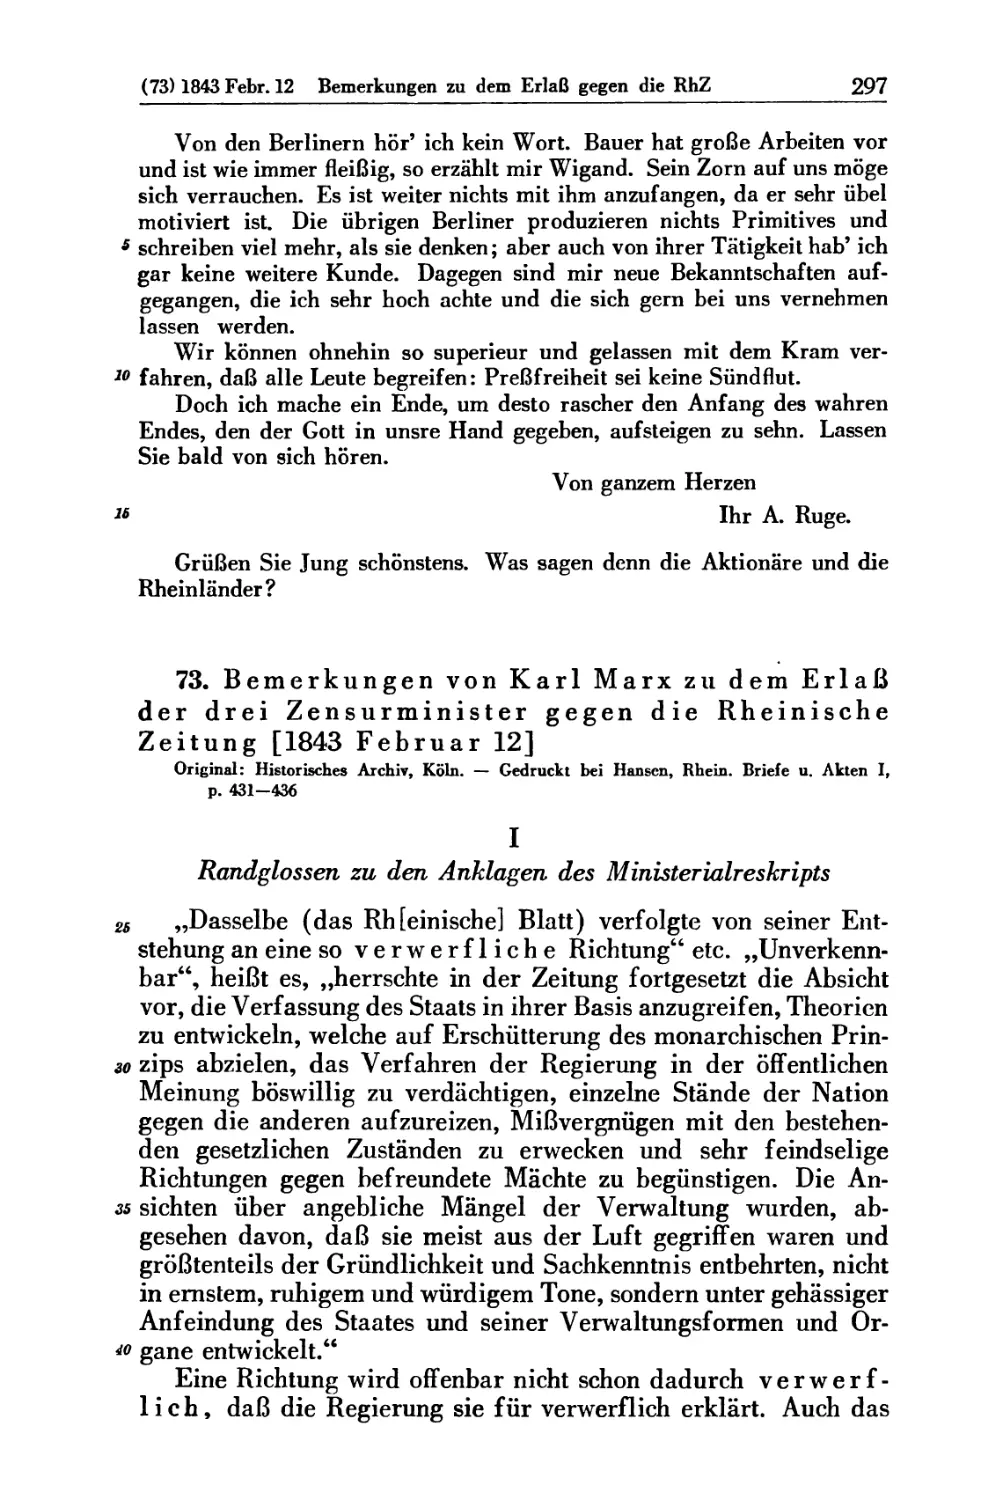 73. Bemerkungen von Karl Marx zu dem Erlaß der drei Zensurminister gegen die Rheinische Zeitung [1843 Februar 12]